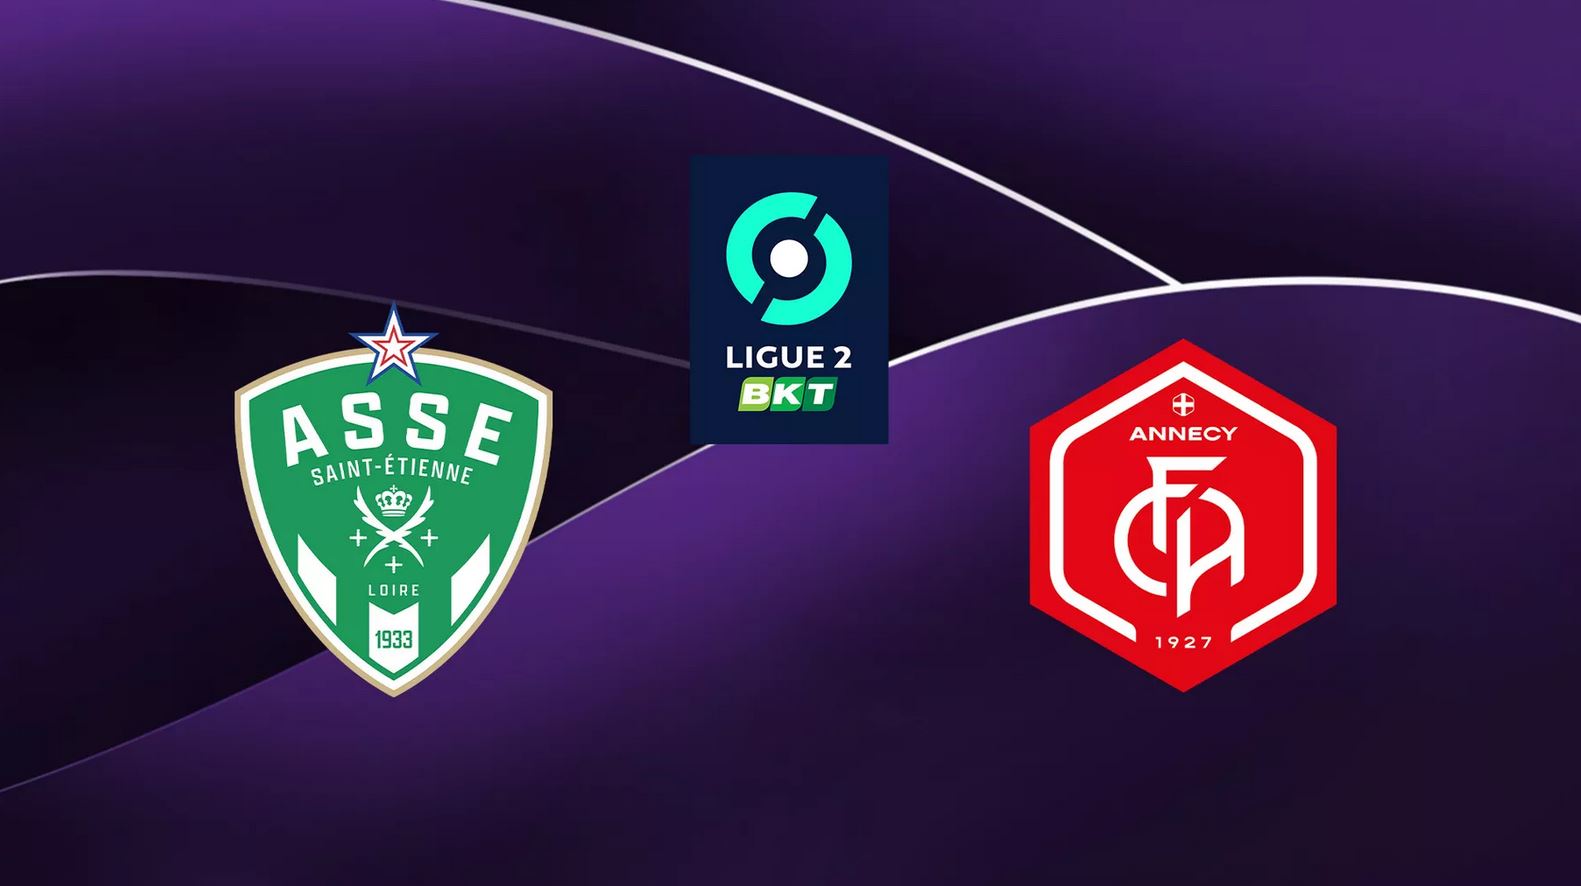 Saint-Etienne (ASSE) / Annecy (FCA) (TV/Streaming) Sur quelle chaîne et à quelle heure regarder le match de Ligue 2 ?